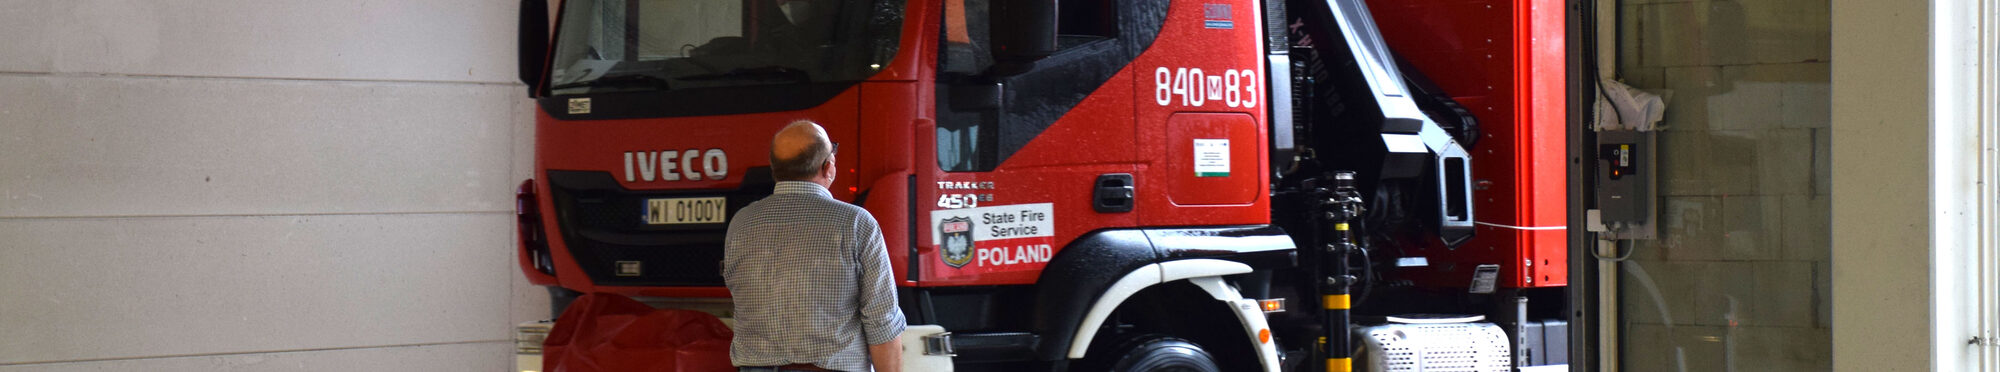 Ein mit Bautrocknern beladener LKW aus Polen fährt in eine Halle